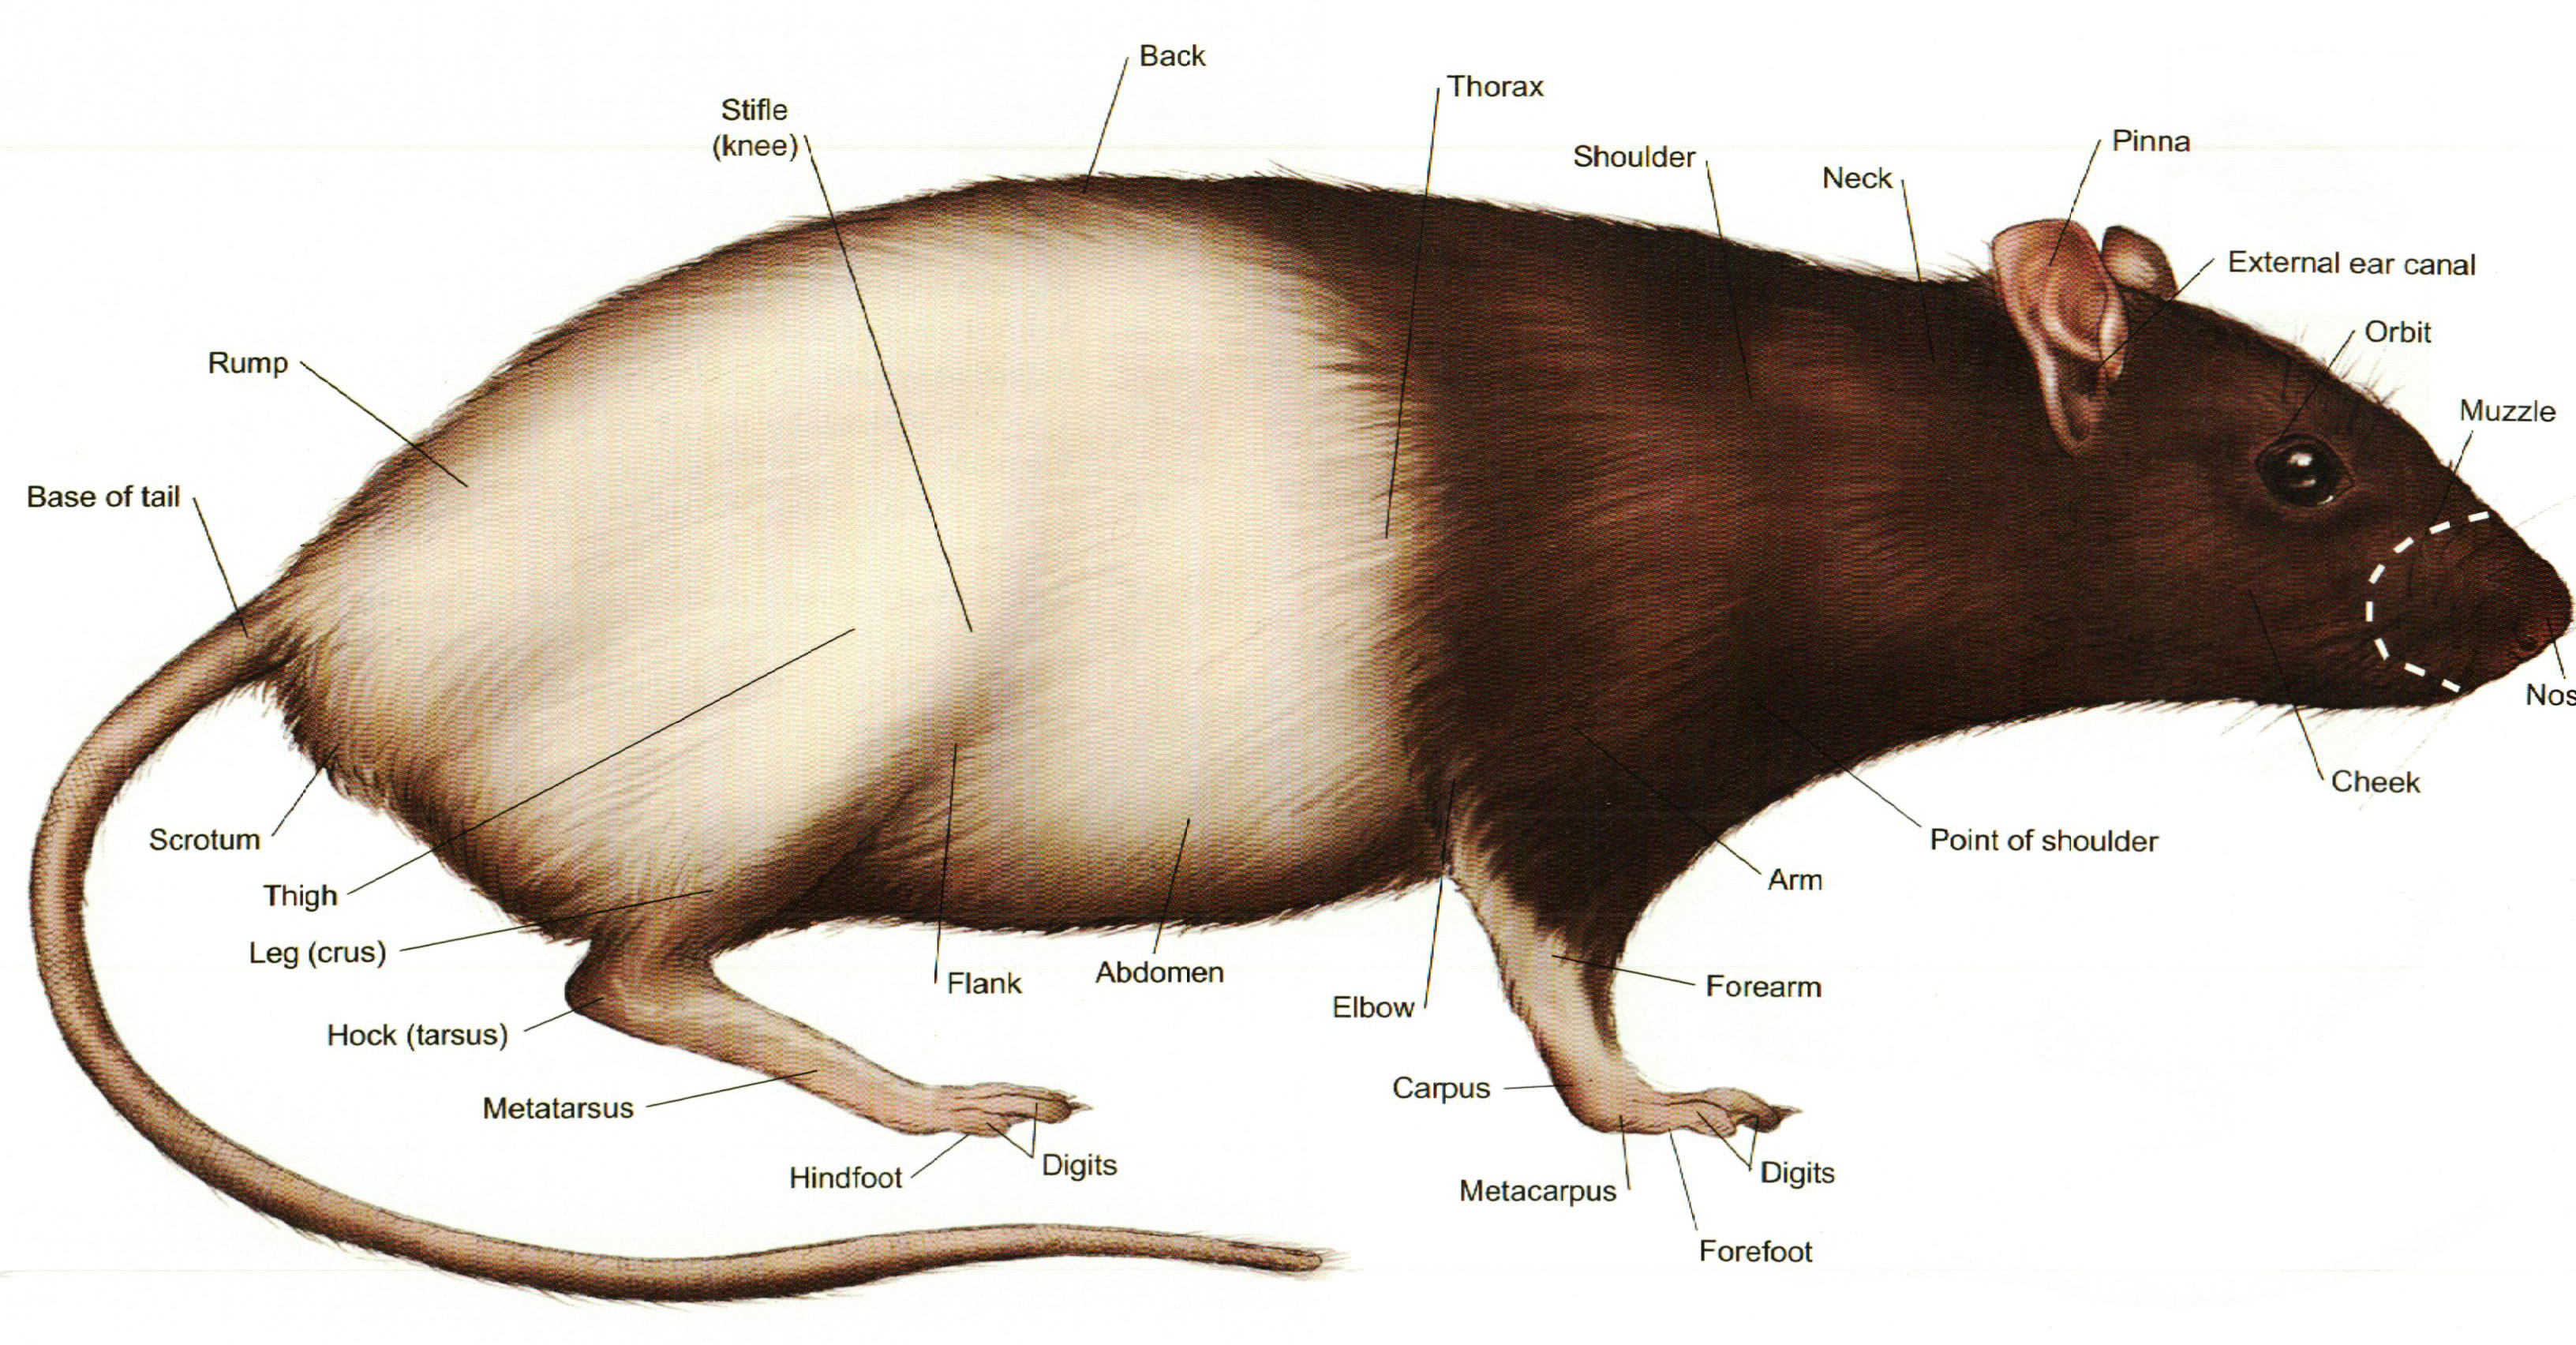 Виды и породы домашних декоративных крыс с фото и описаниями